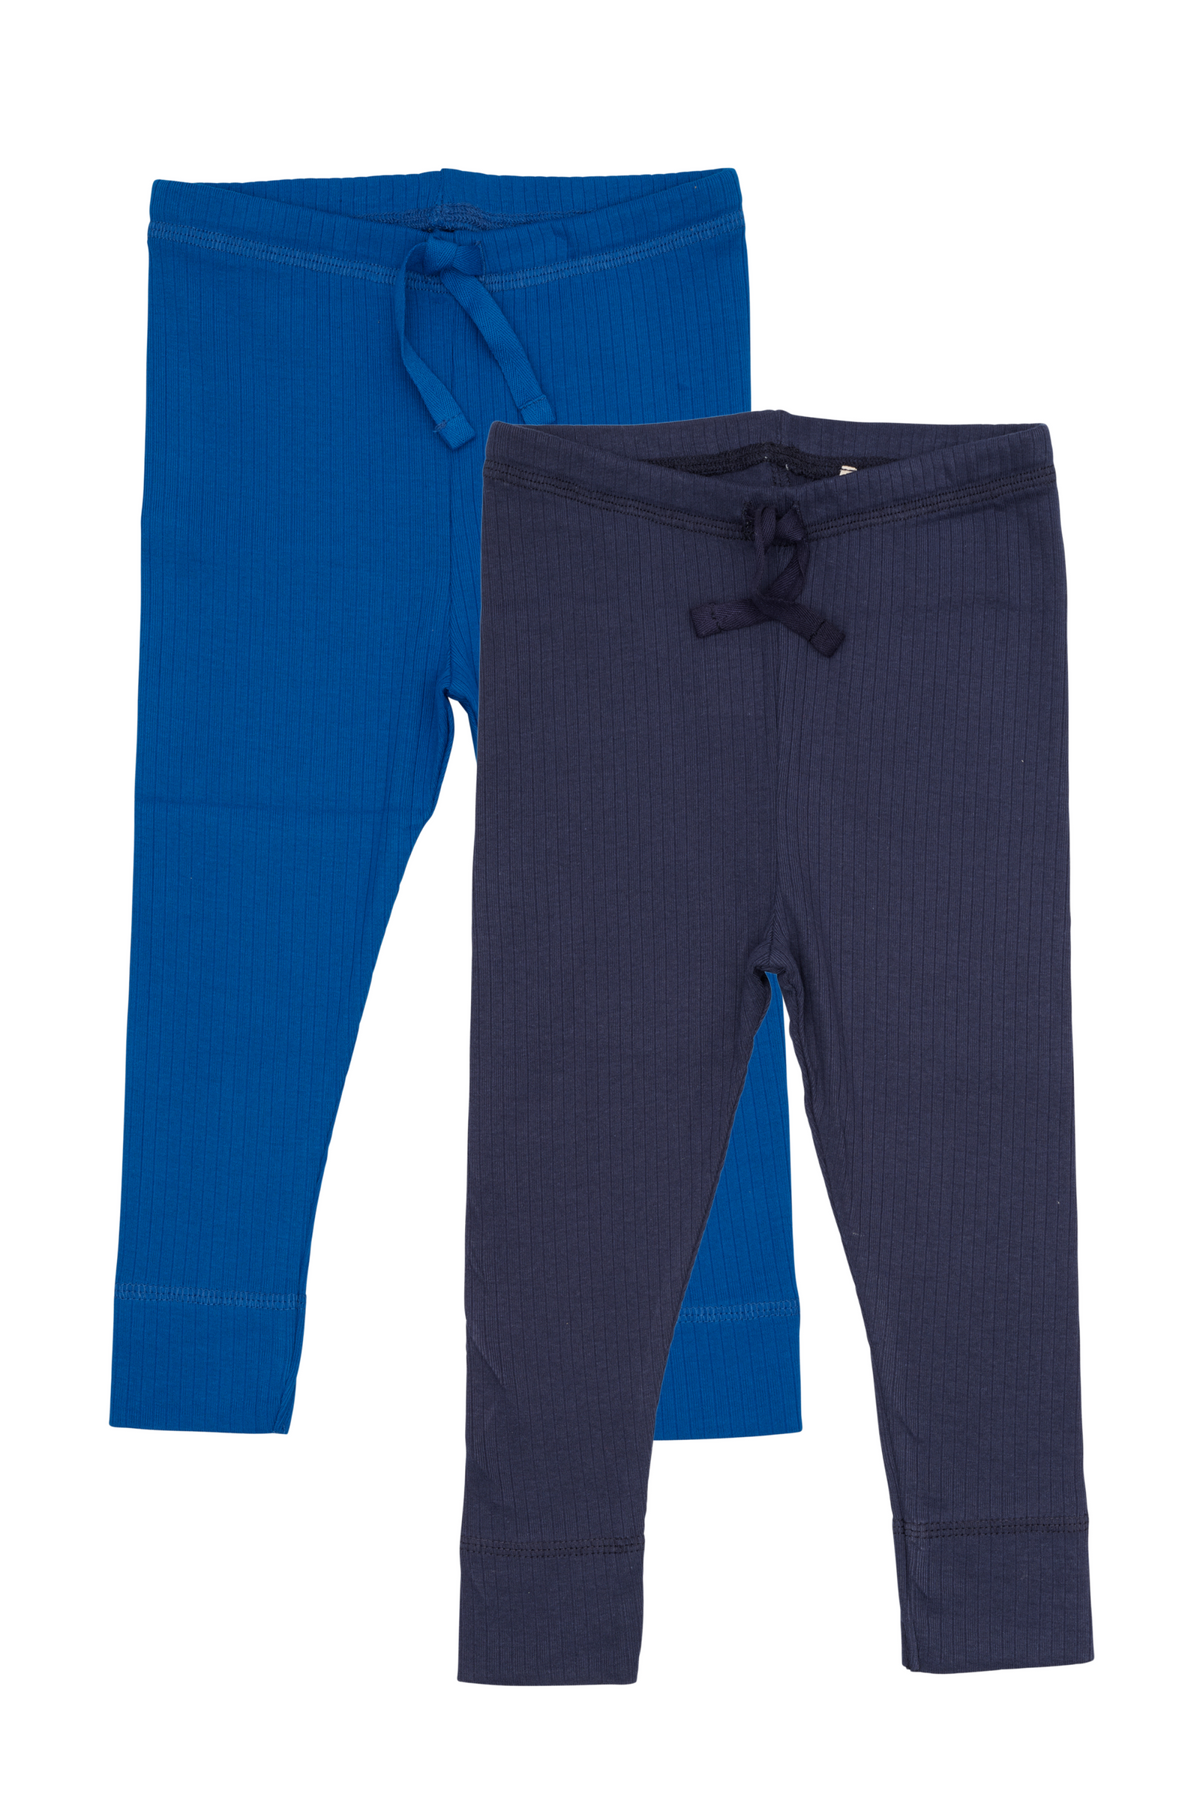 Copenhagen Colors 2 pack leggings - Blue / navy - leggins - MamaMilla